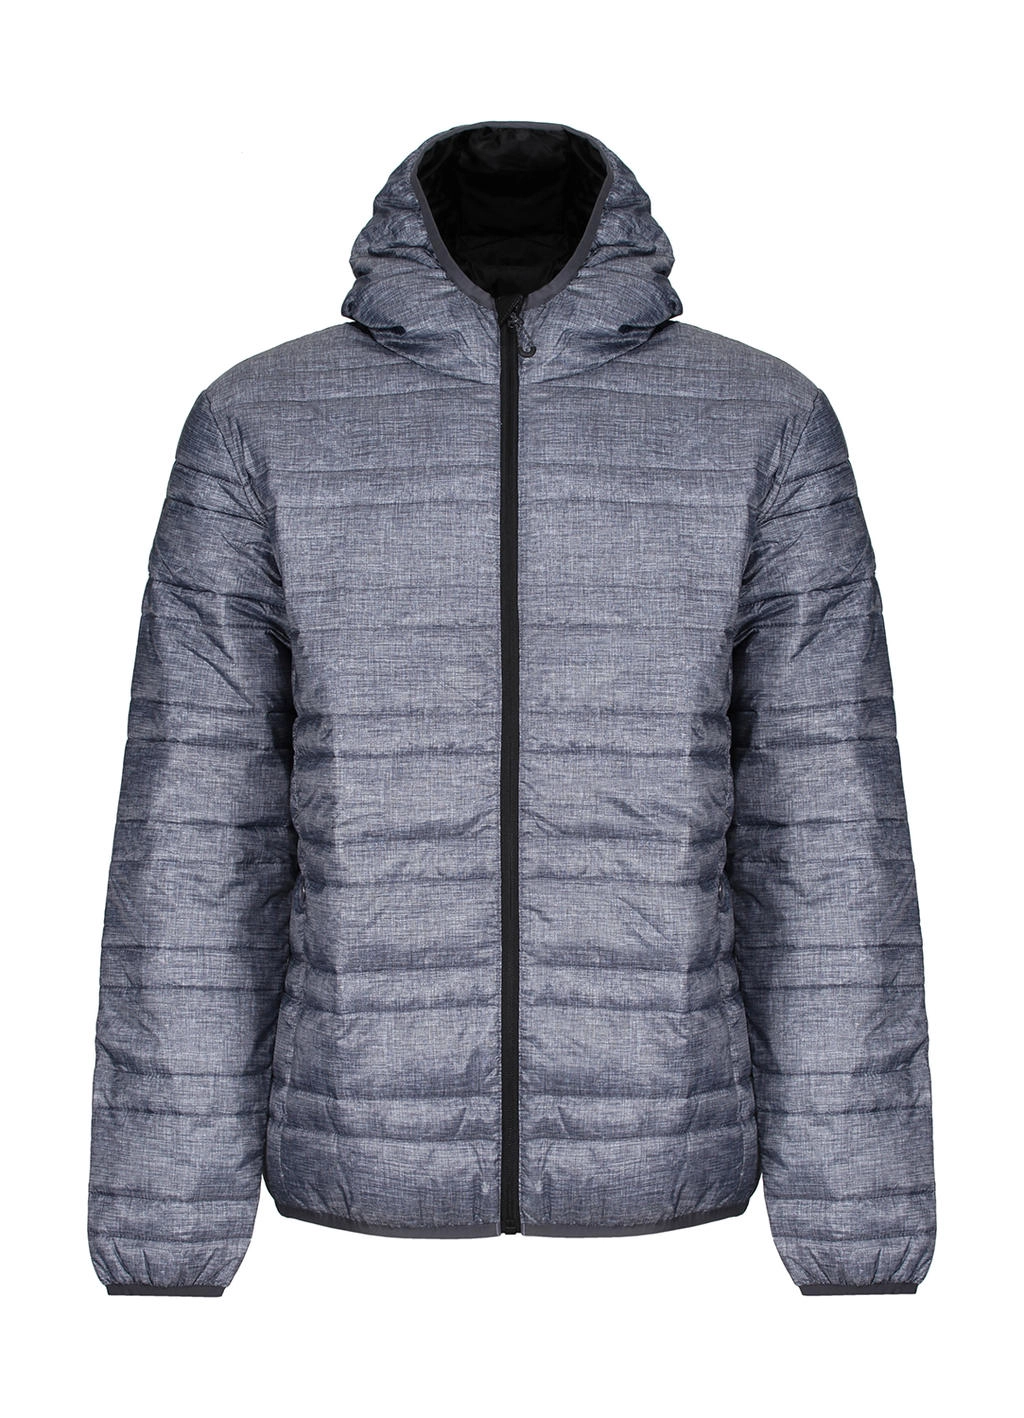 Hooded Firedown Baffle Jacket zum Besticken und Bedrucken in der Farbe Marl Grey/Black mit Ihren Logo, Schriftzug oder Motiv.